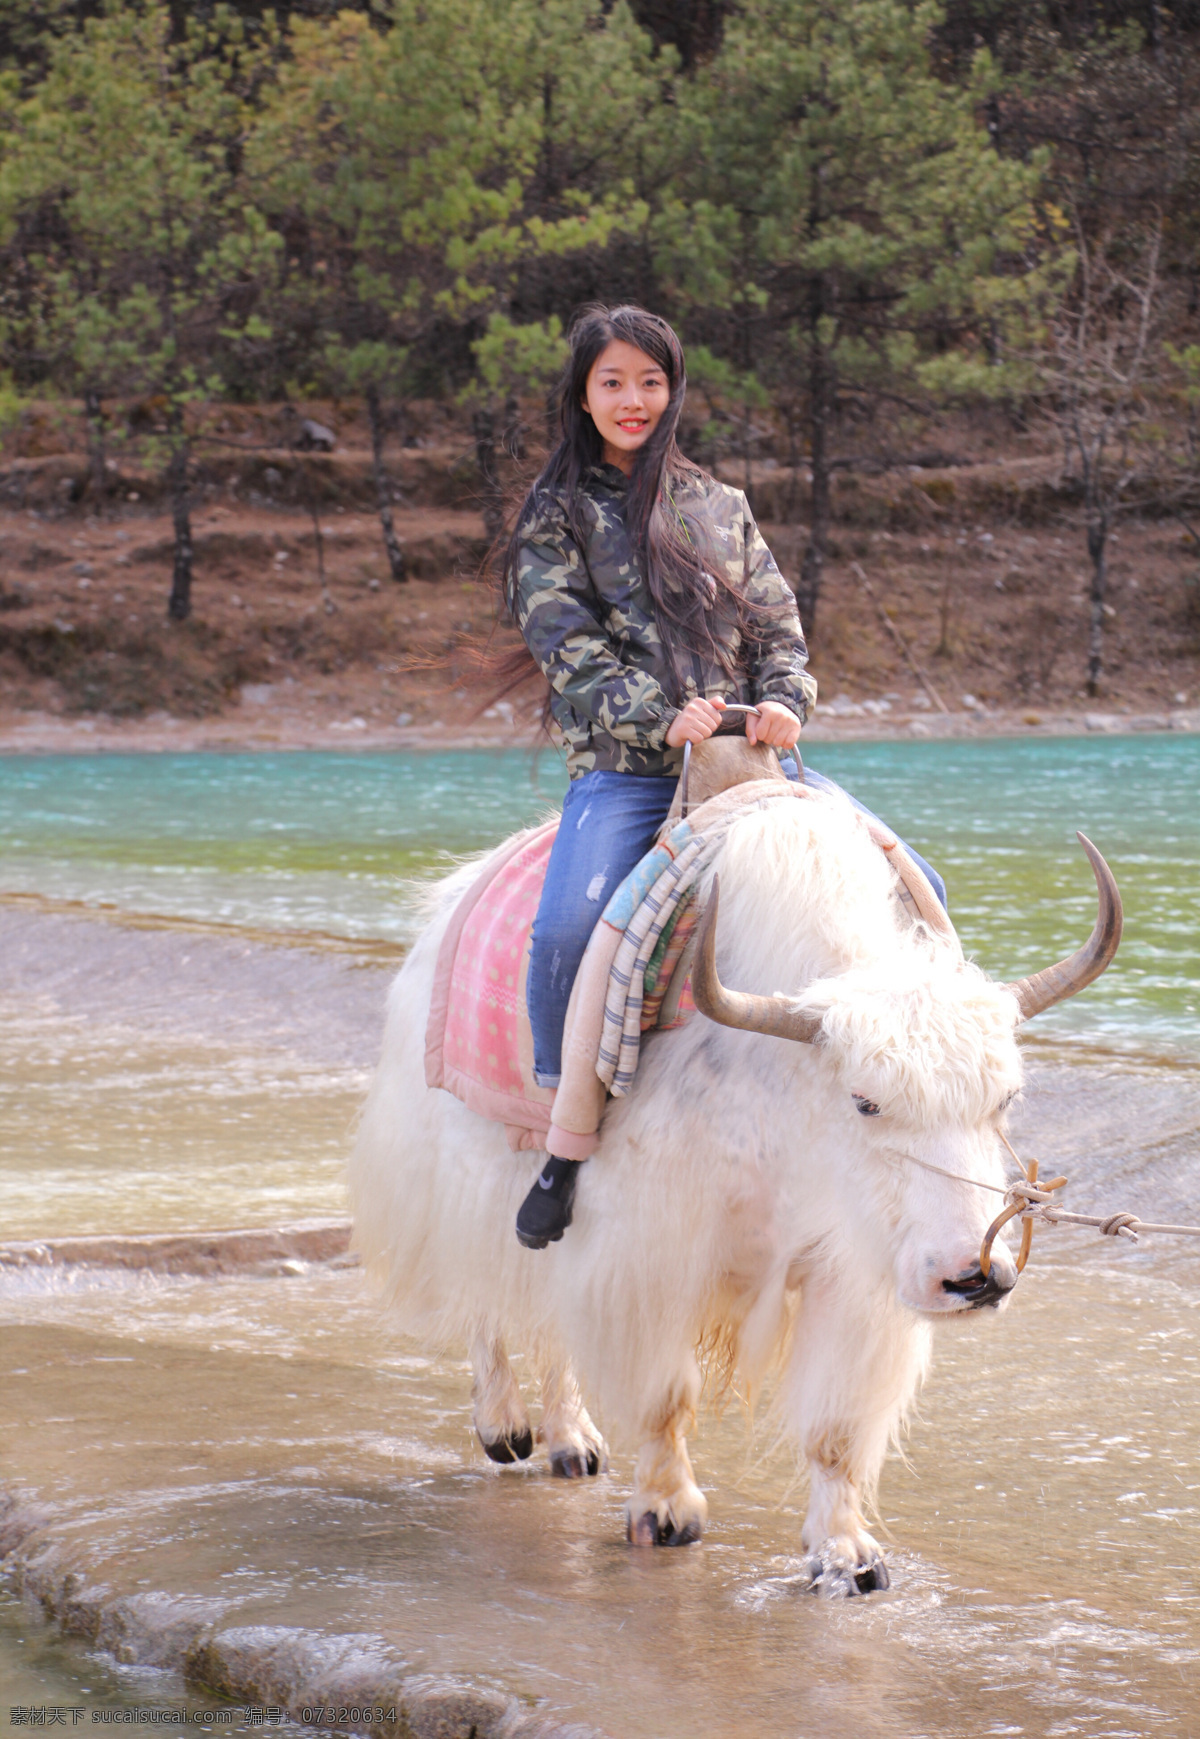 姑娘骑牦牛 壮族 姑娘 民族 服装 传统 美女 牦牛 高清图片 人物图库 女性女人